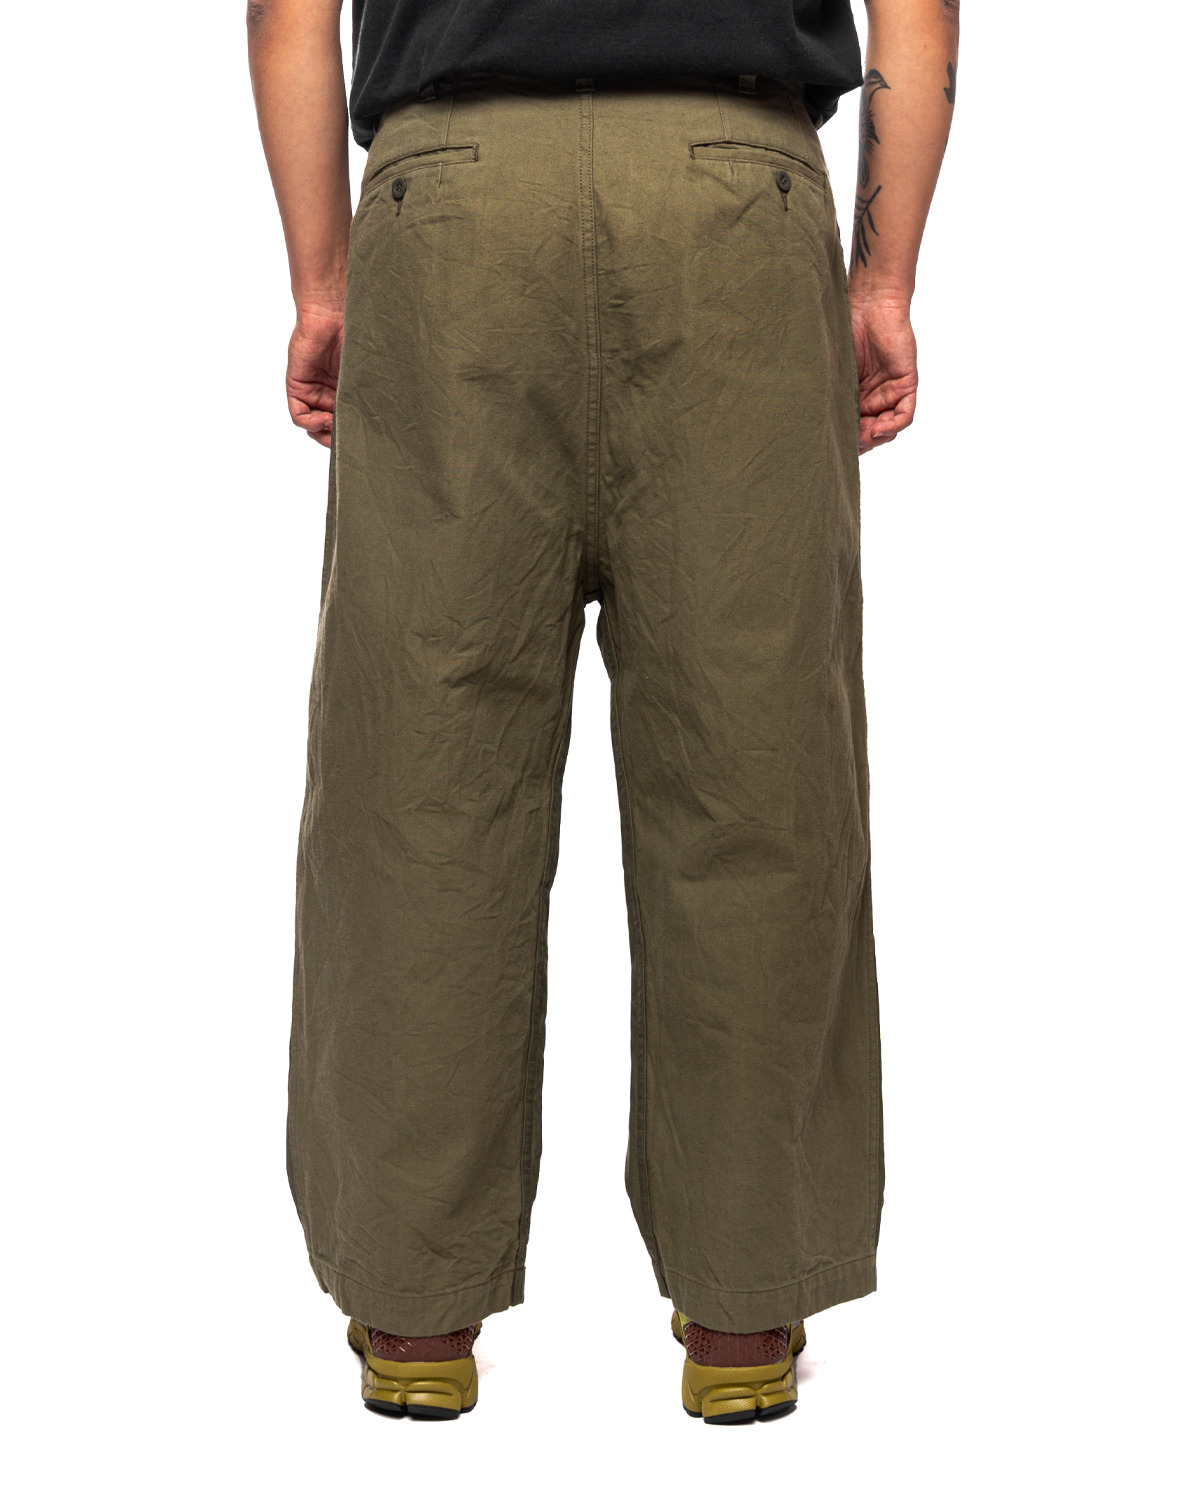 Khaki Paneled Trousers HL-P011-051 - 3